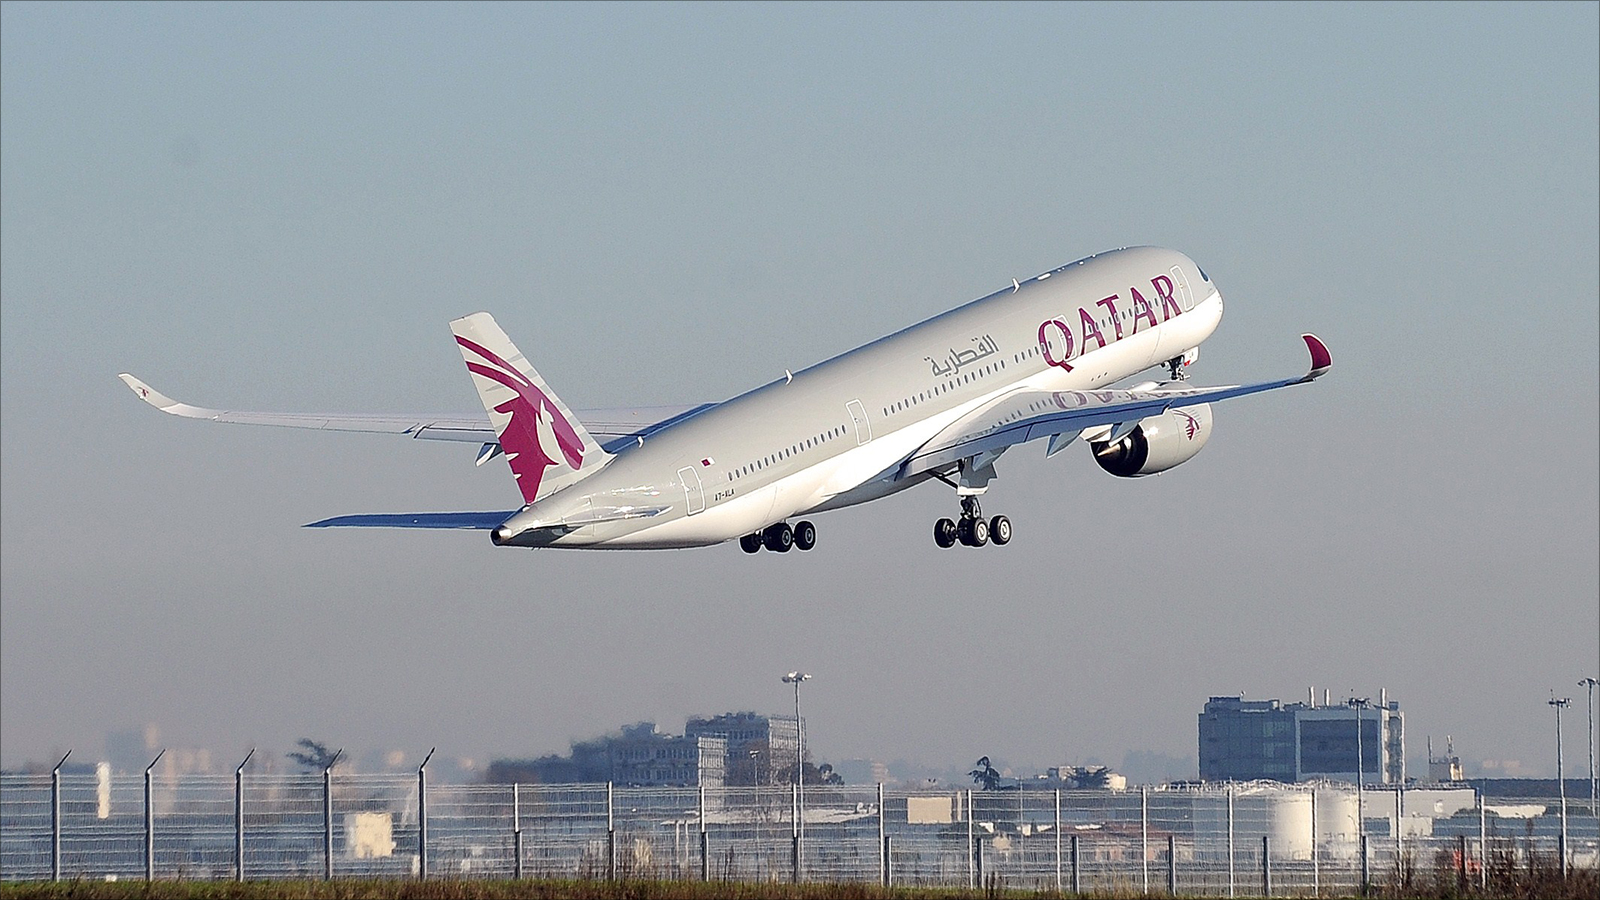 القطرية أول شركة طيران تعلن السماح للمسافرين من الدول السبع بالمغادرة إلى مدن أميركية (الفرنسية)